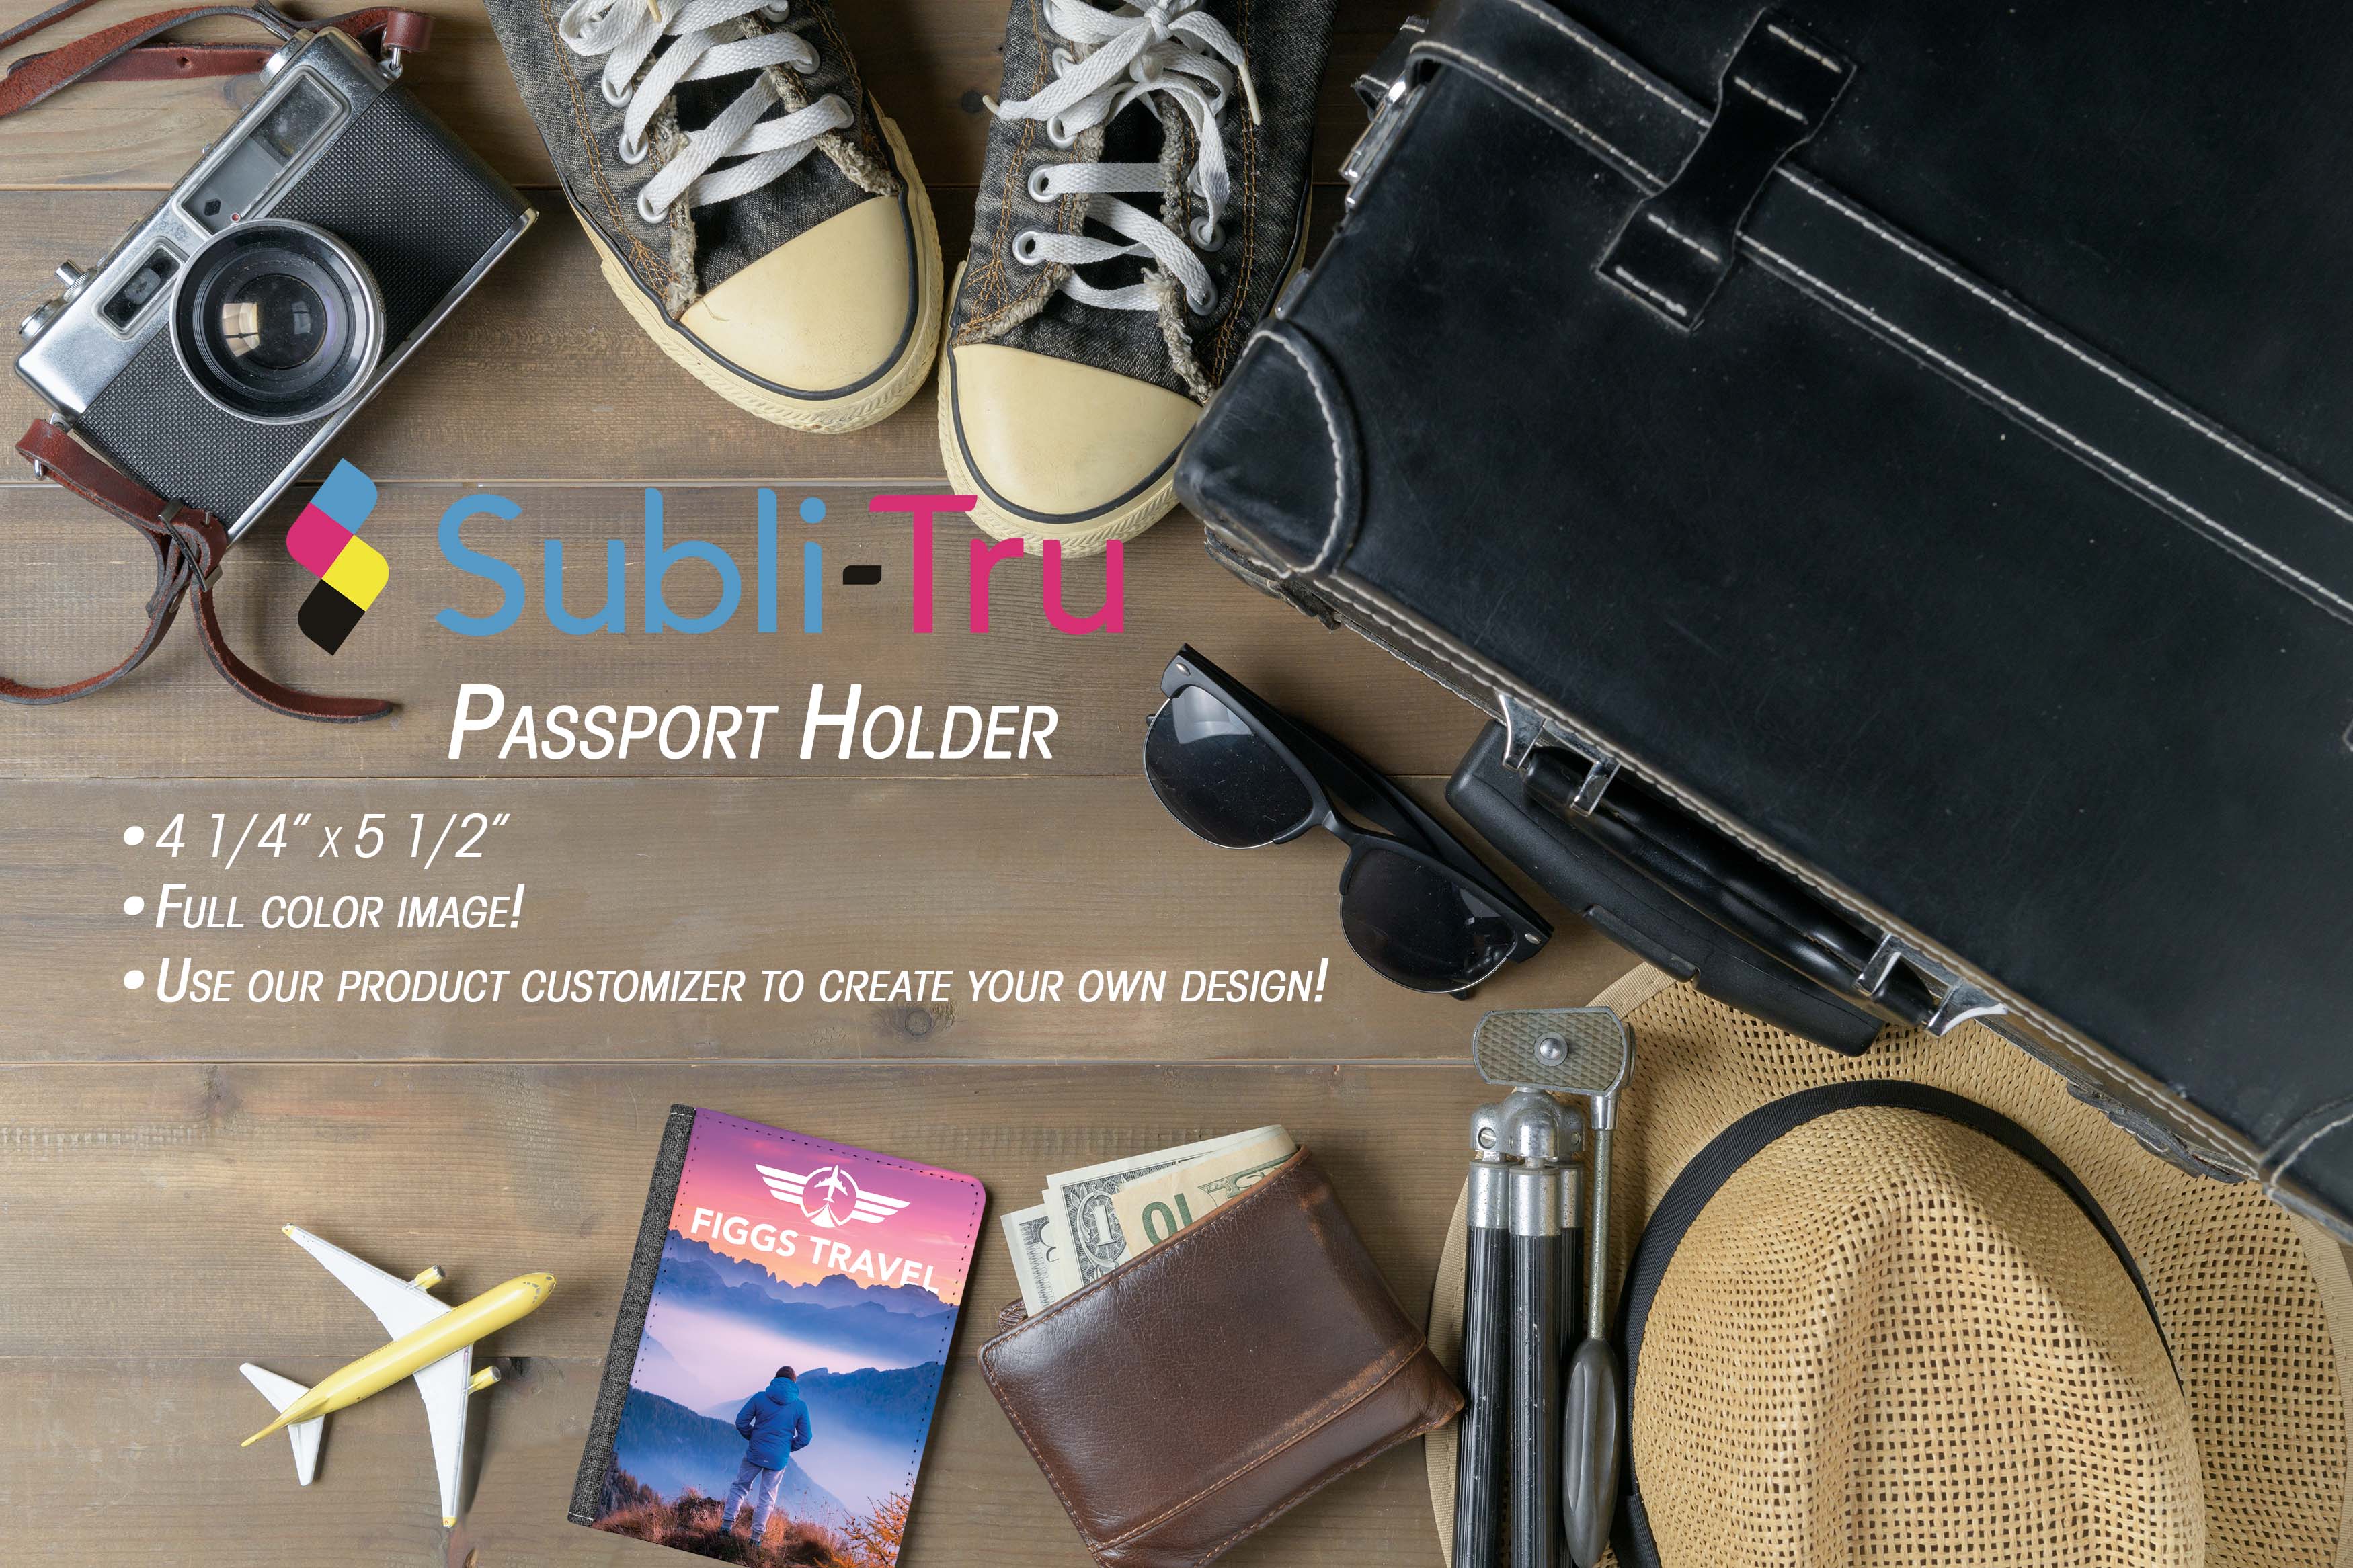 Passport Holder, Subli-Tru, 4 1/4" x 5 1/2" Passport Holder Craftworks NW 